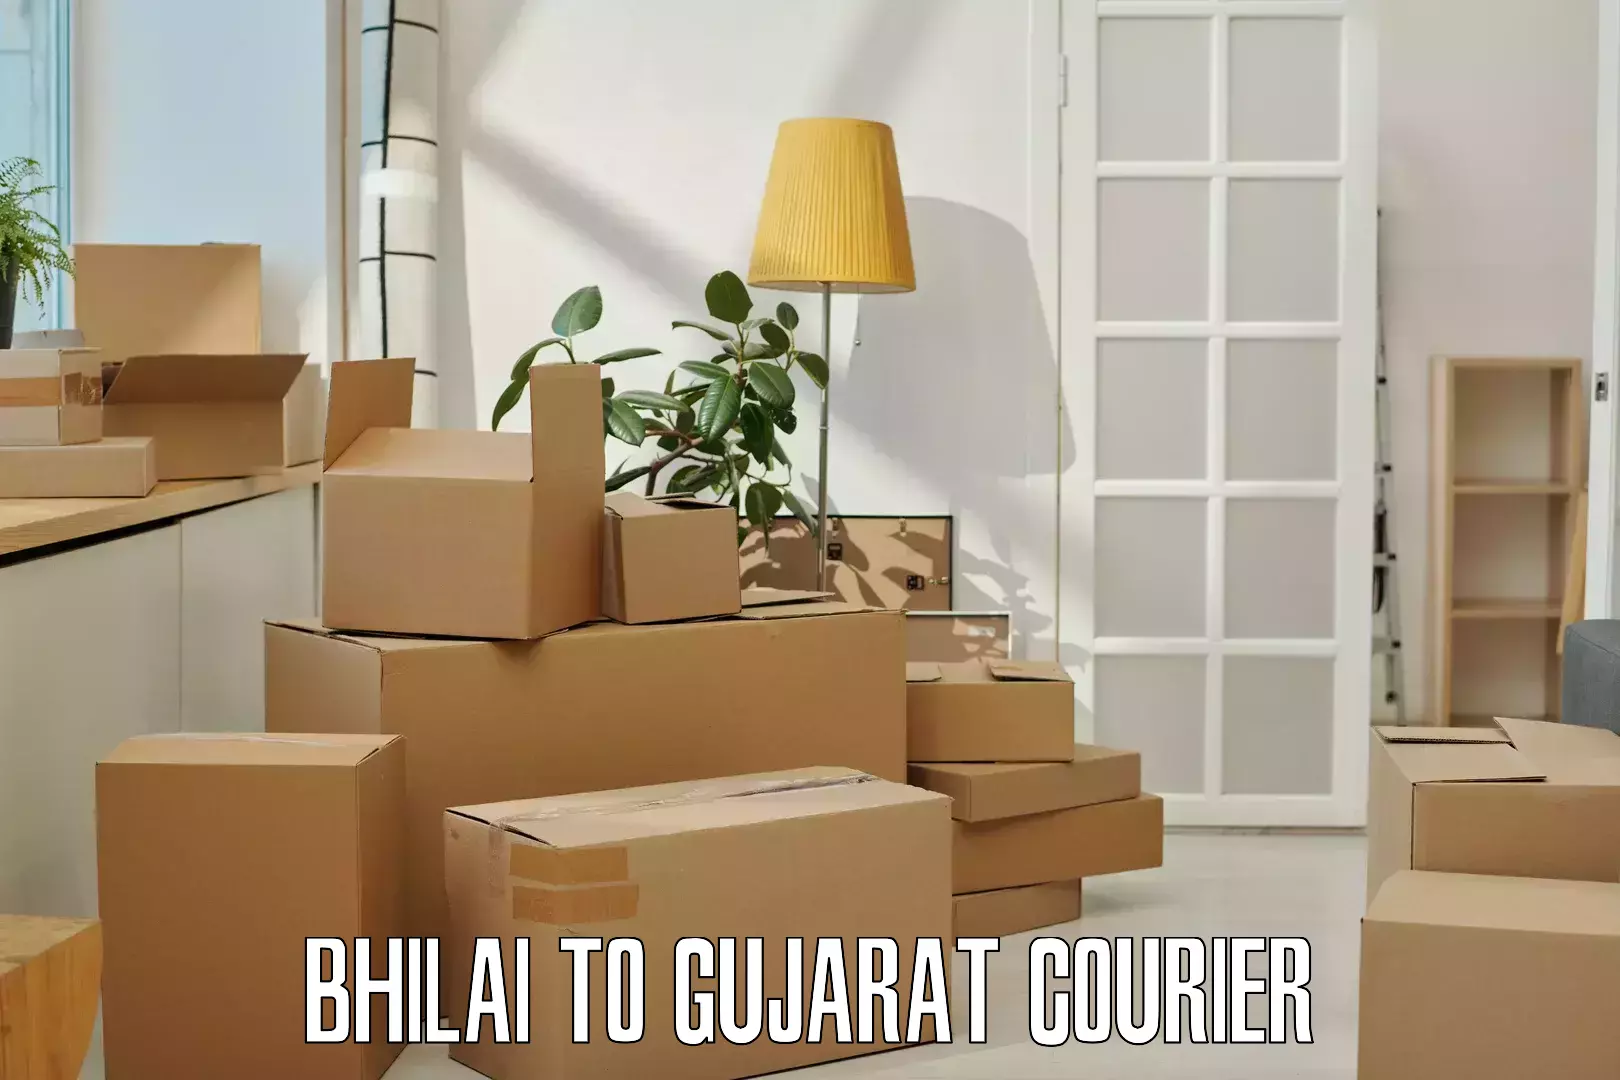 Courier service comparison Bhilai to NIT Surat